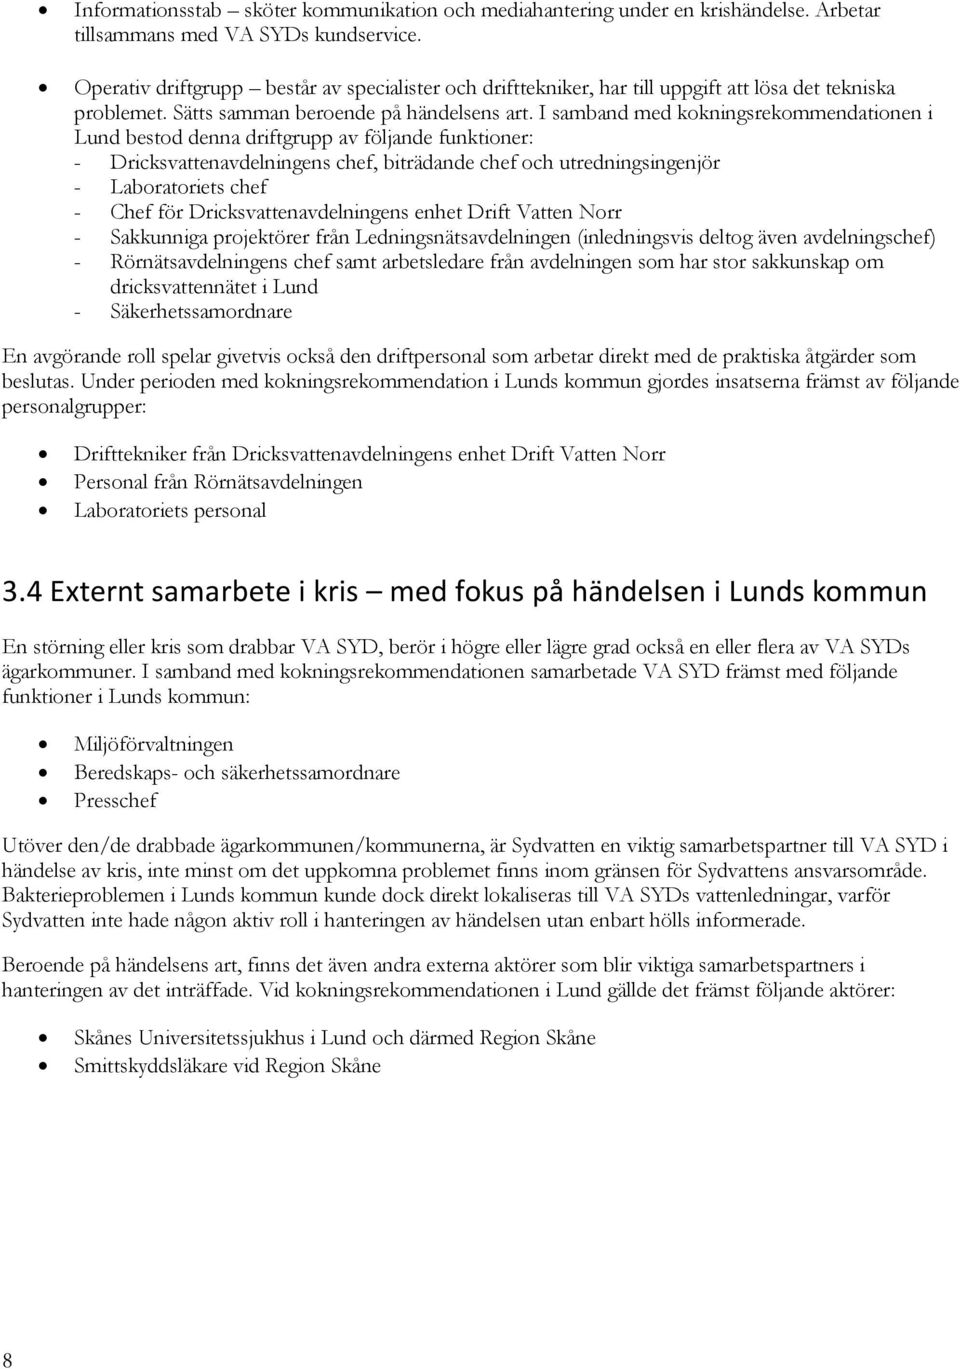 I samband med kokningsrekommendationen i Lund bestod denna driftgrupp av följande funktioner: - Dricksvattenavdelningens chef, biträdande chef och utredningsingenjör - Laboratoriets chef - Chef för